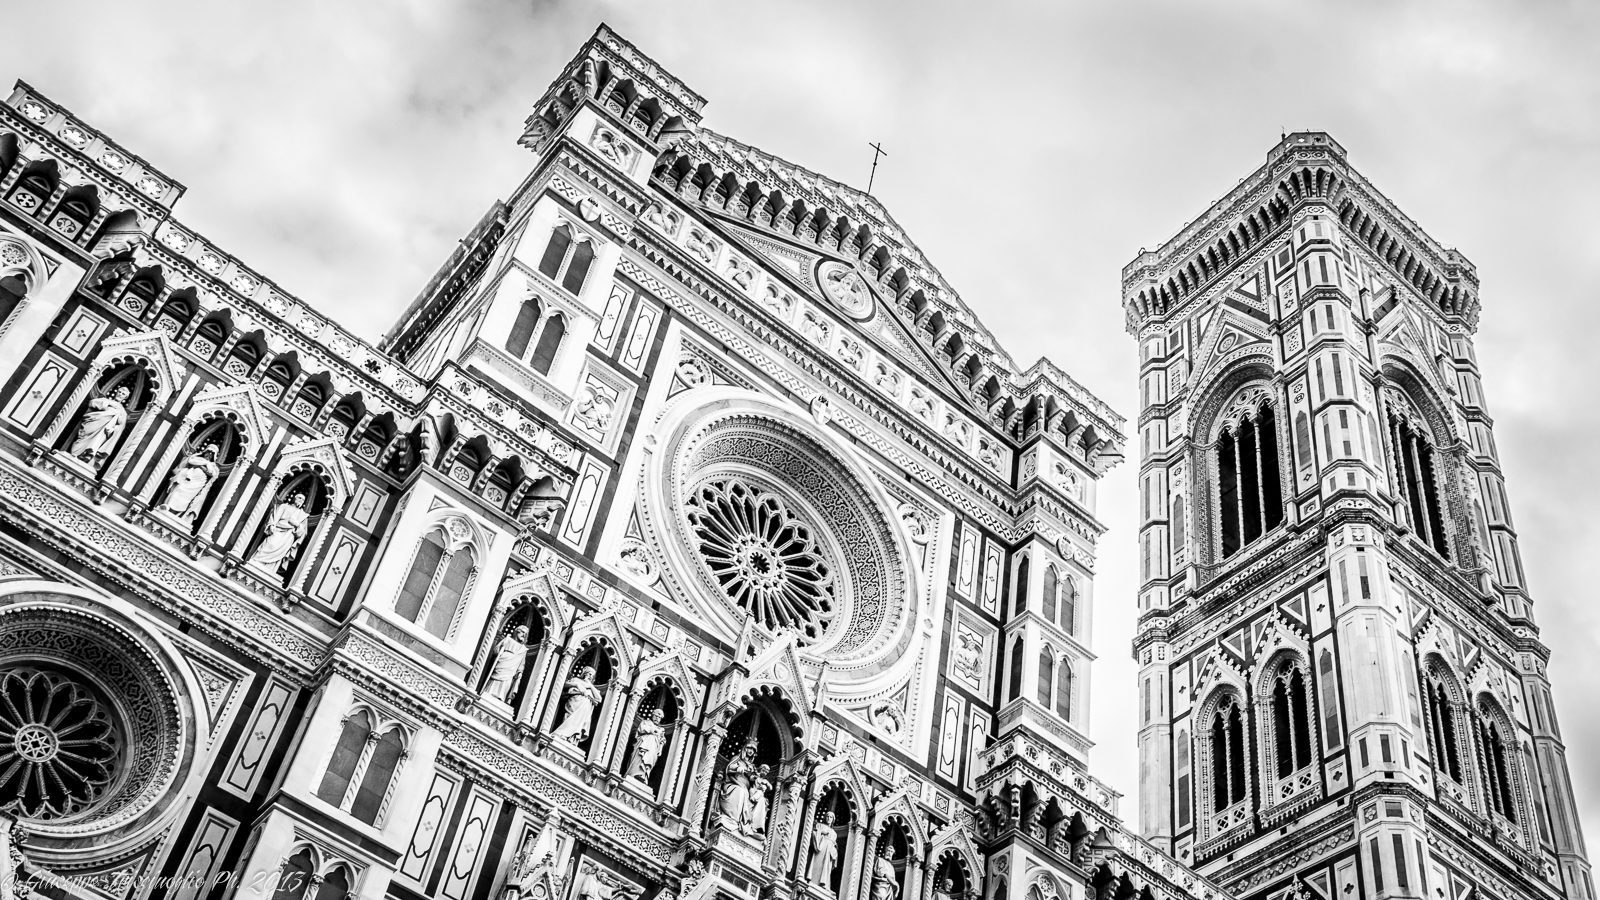 Firenze Duomo islandburner Quadro Stampa su Tela Quadri Moderni Bel Tramonto sulla Cattedrale di Santa Maria del Fiore Italia UHY 